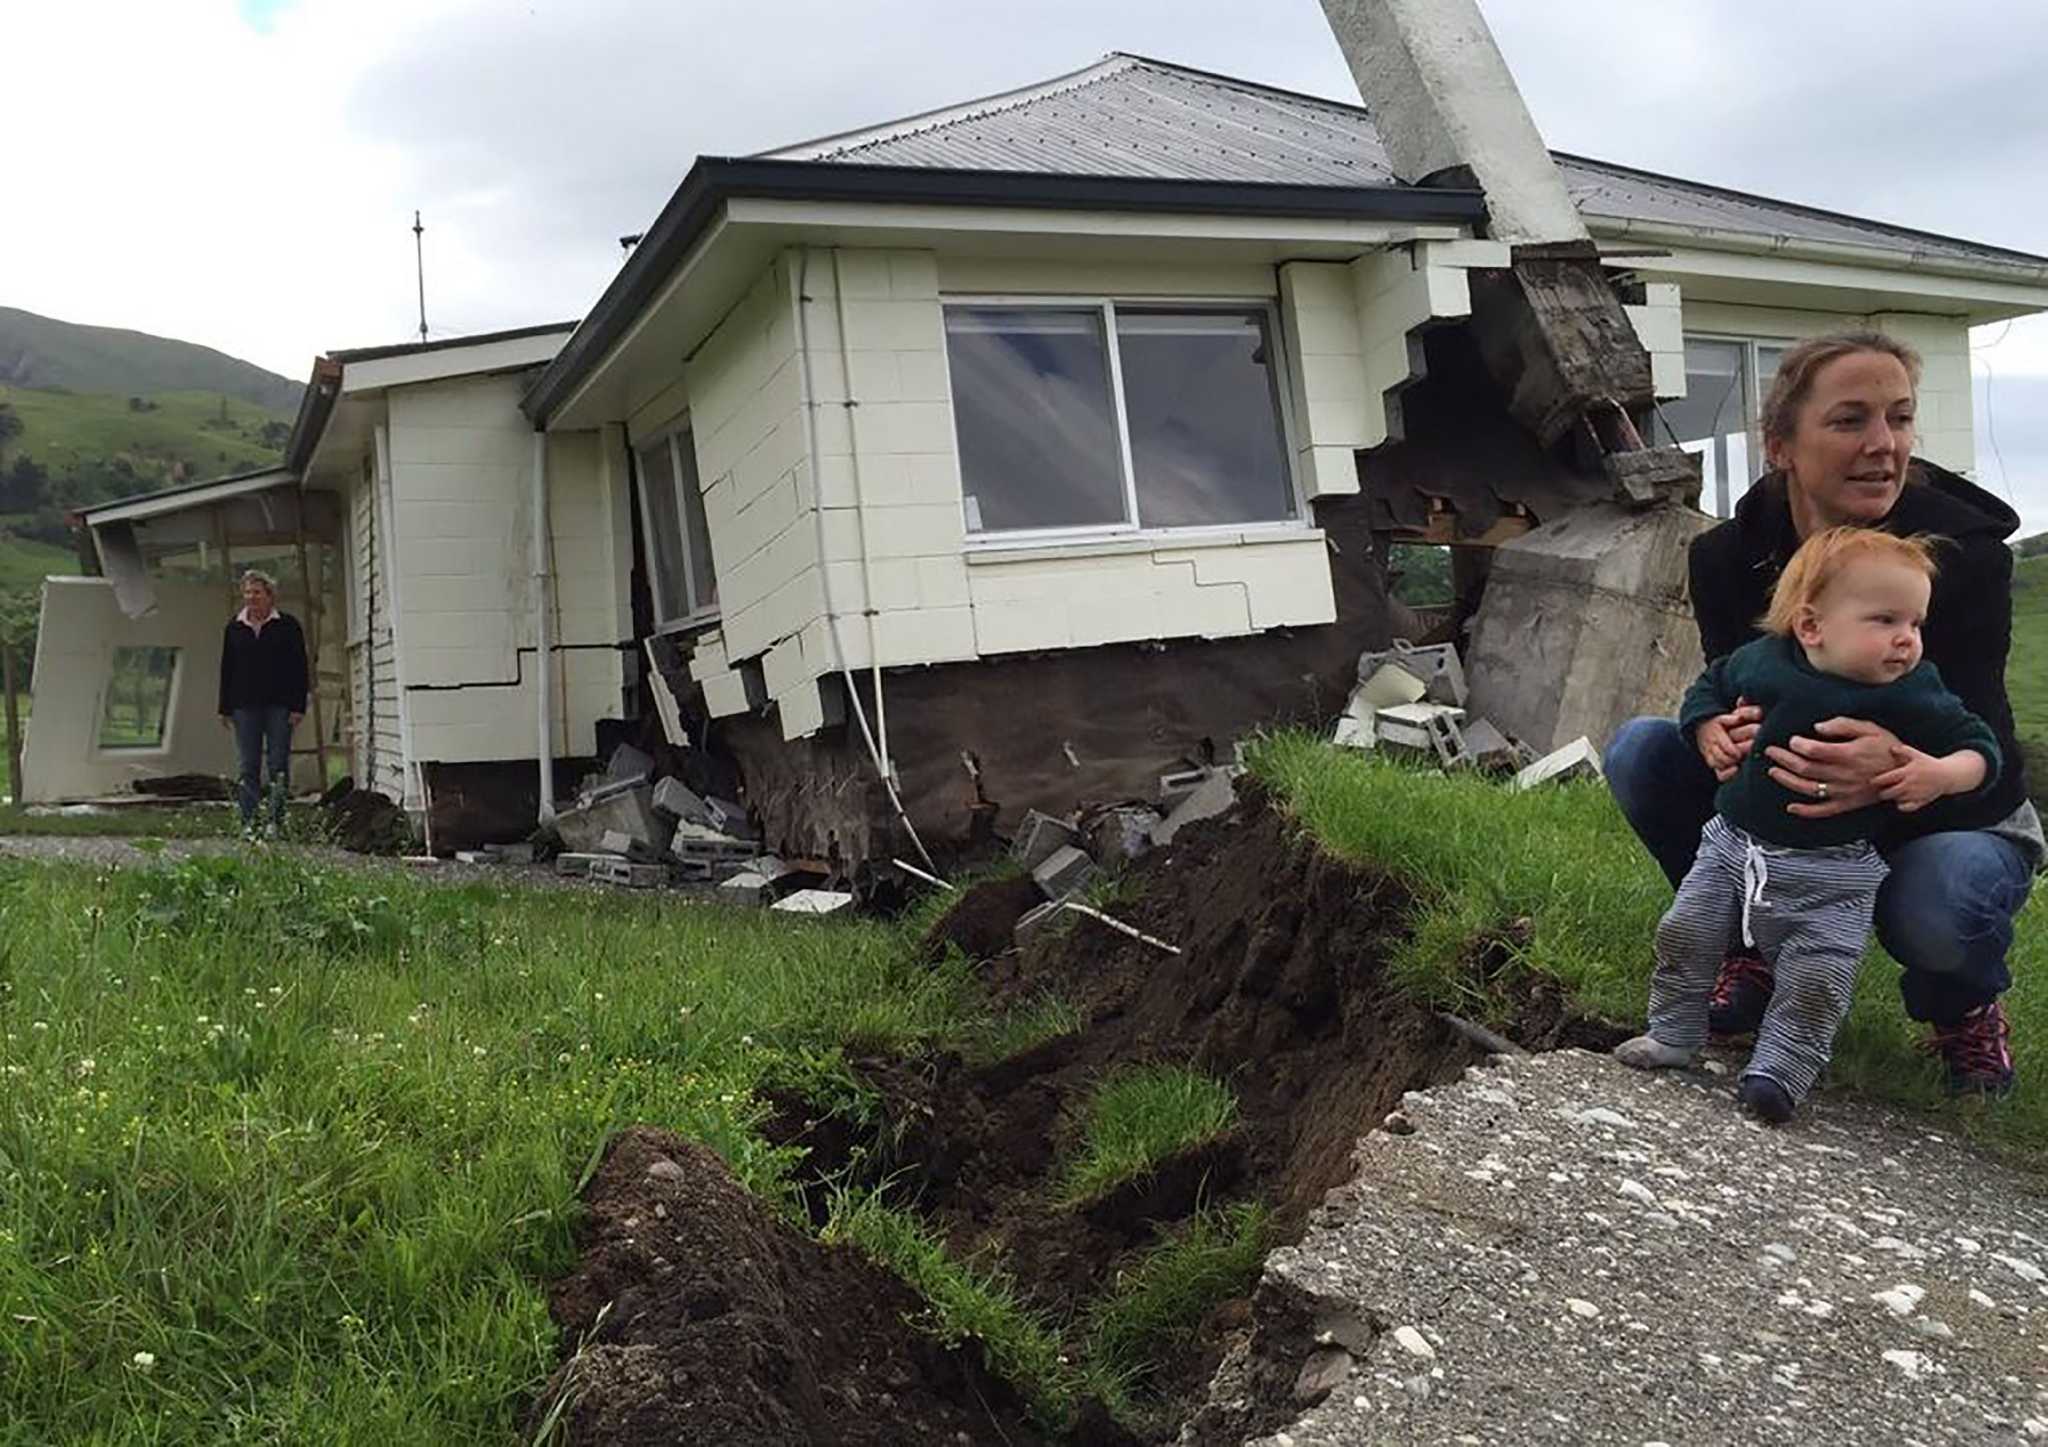 землетрясения в новой зеландии